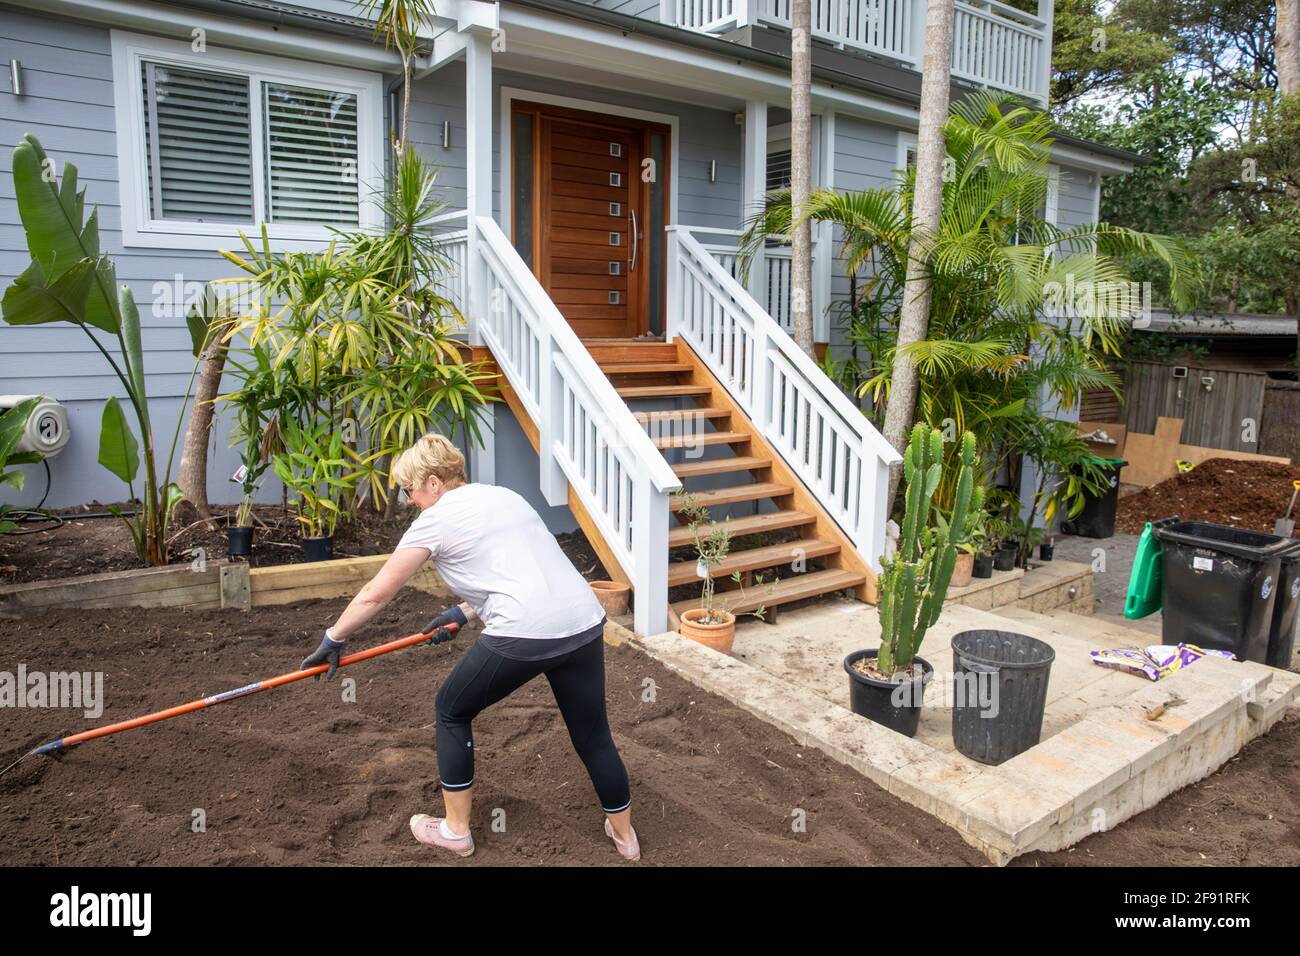 Australische Frau Modell freigegeben arbeiten auf dem Garten zu Hause Raking Boden, um für neue Rasen zu legen vorzubereiten, Sydney, NSW, Australien Stockfoto